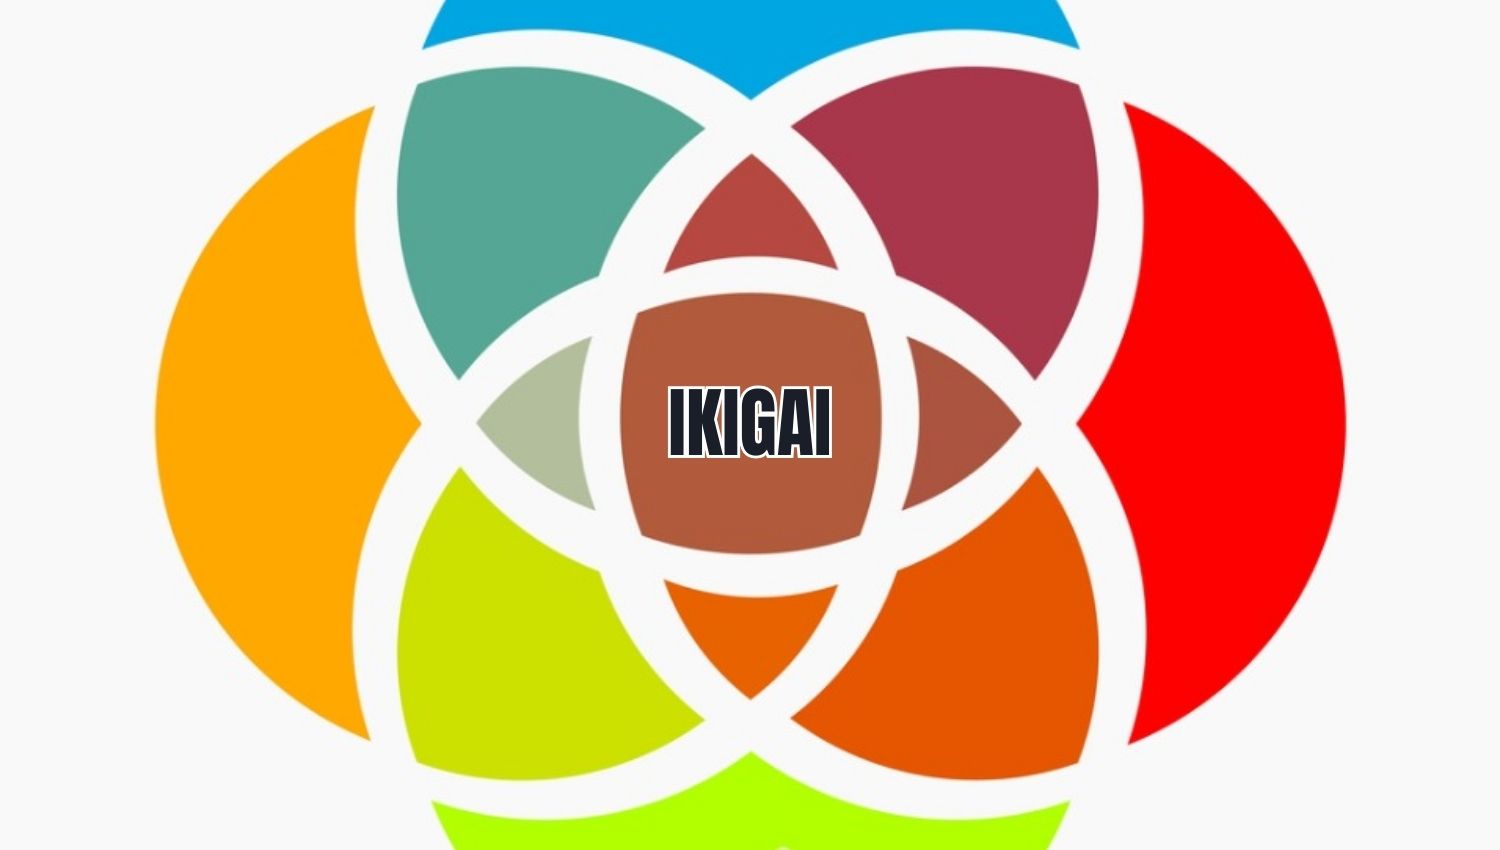 símbolo do livro ikigai e o nome 